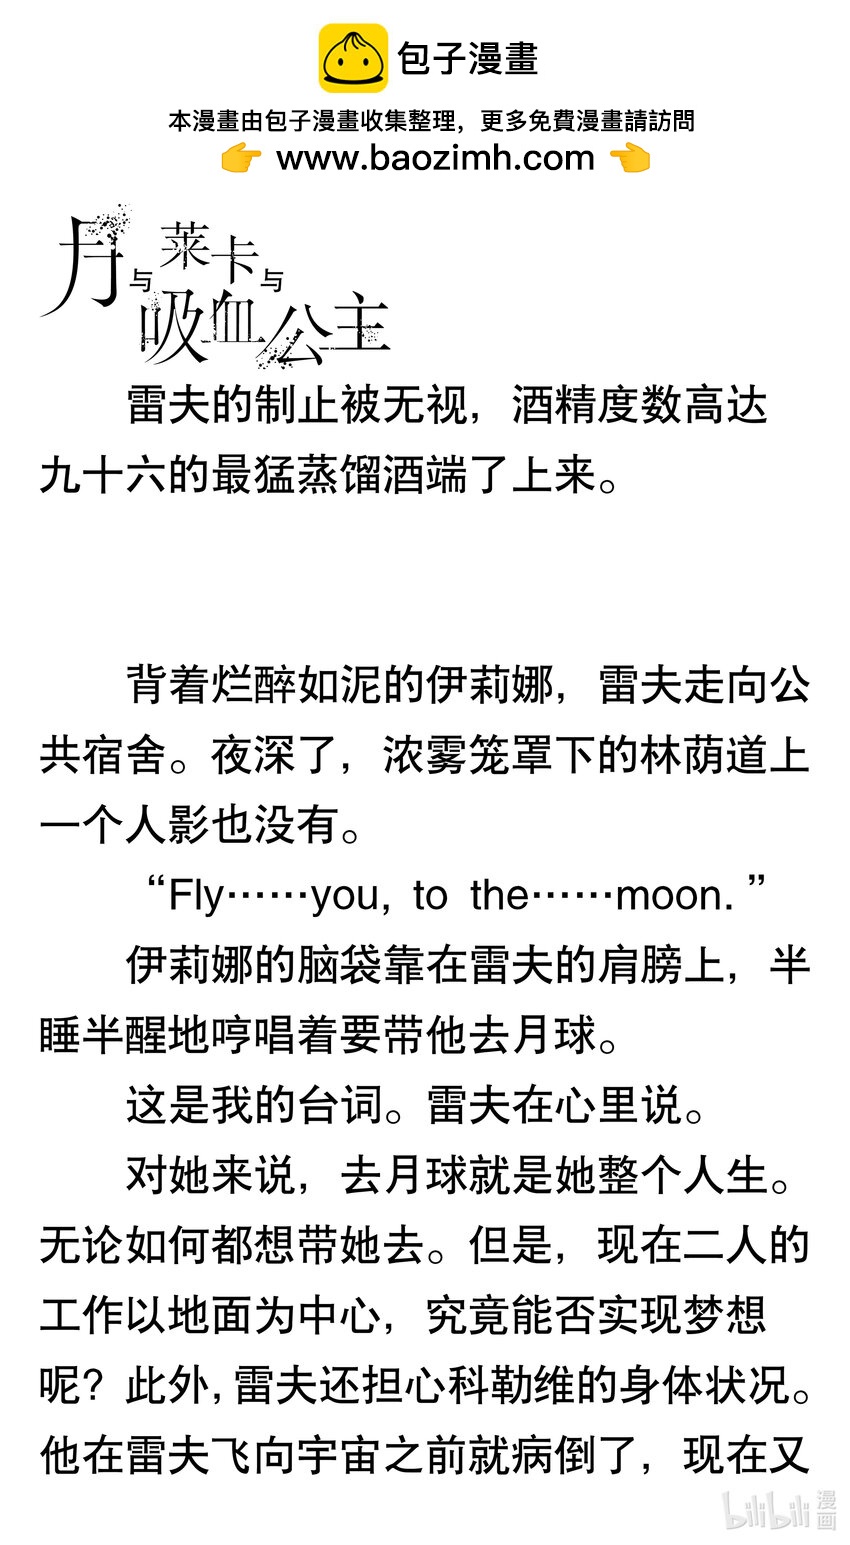 【轻小说】月与莱卡与吸血公主 - 第三乐章 吸血鬼与翼龙'63 - 1